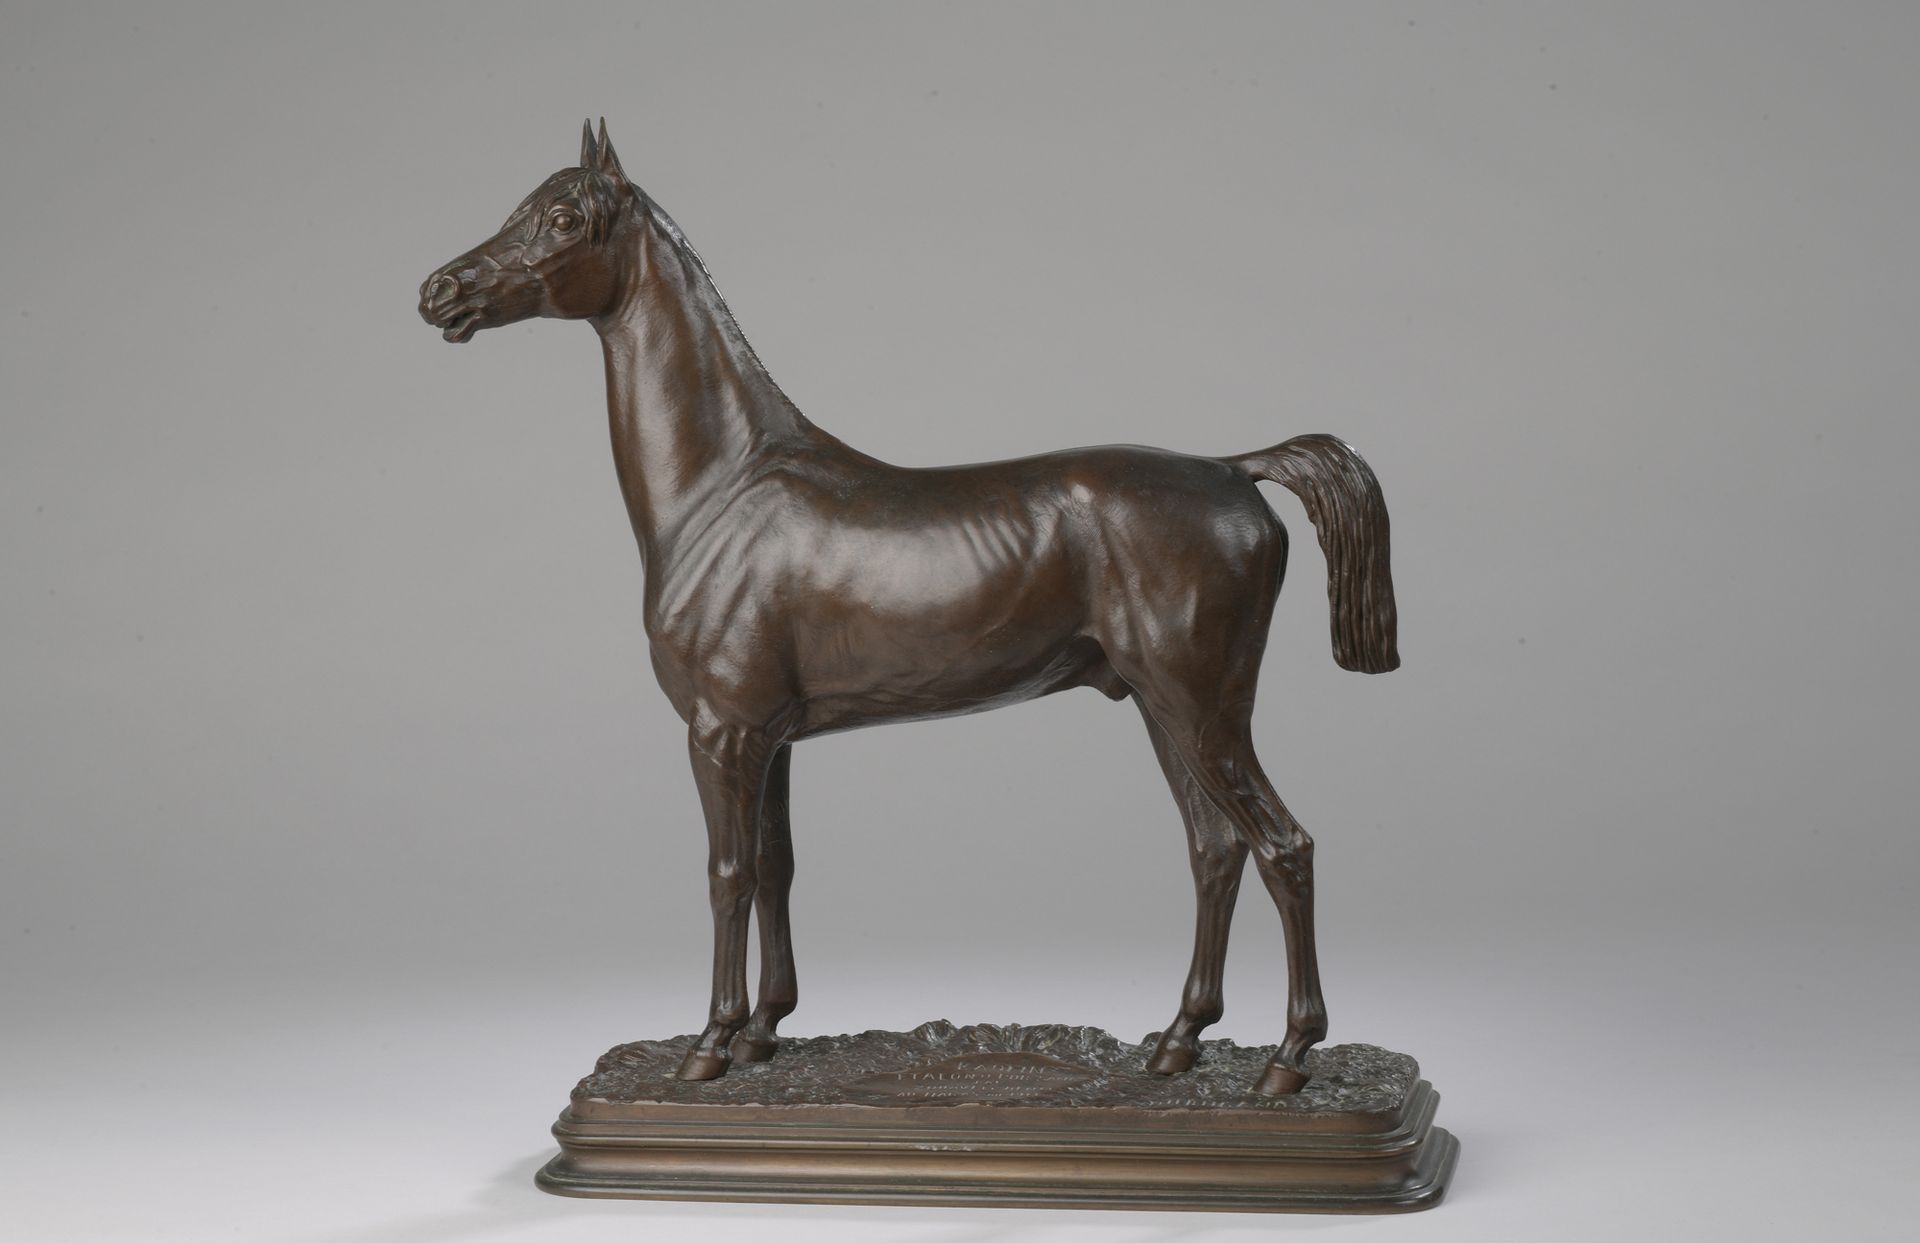 Null 阿尔弗雷德-杜布坎德 (1828-1894)

高林纯种马

青铜，带有浅棕色的铜锈。

阳台上有DUBUCAND的签名。

题目为：《高林/STAL&hellip;